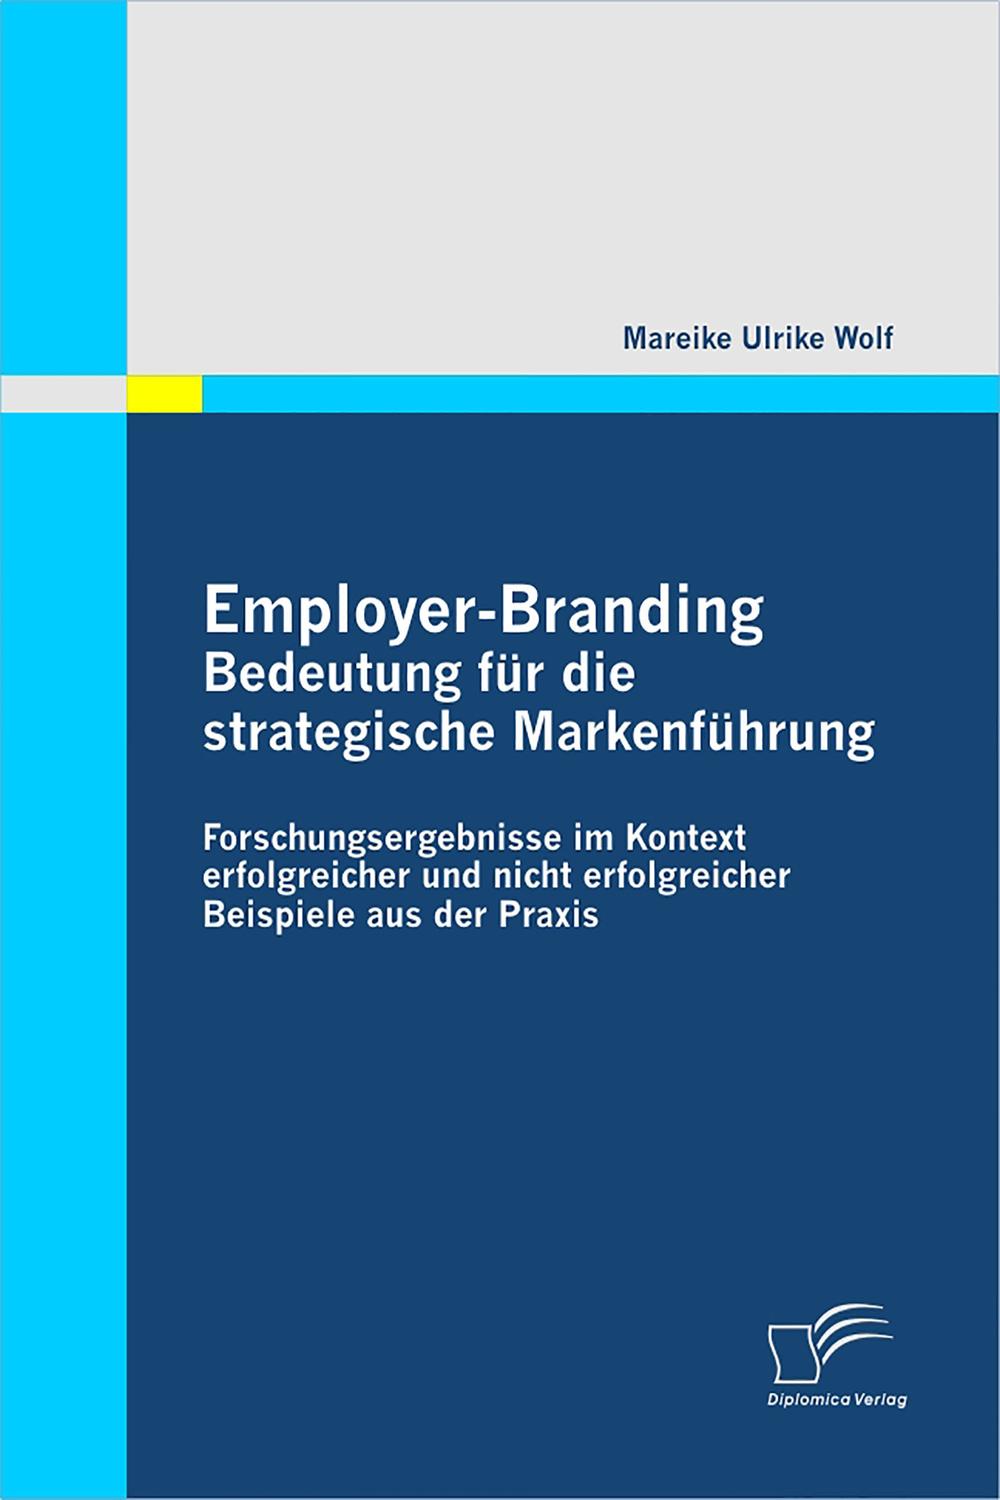 Employer-Branding: Bedeutung für die strategische Markenführung - Mareike Ulrike Wolf